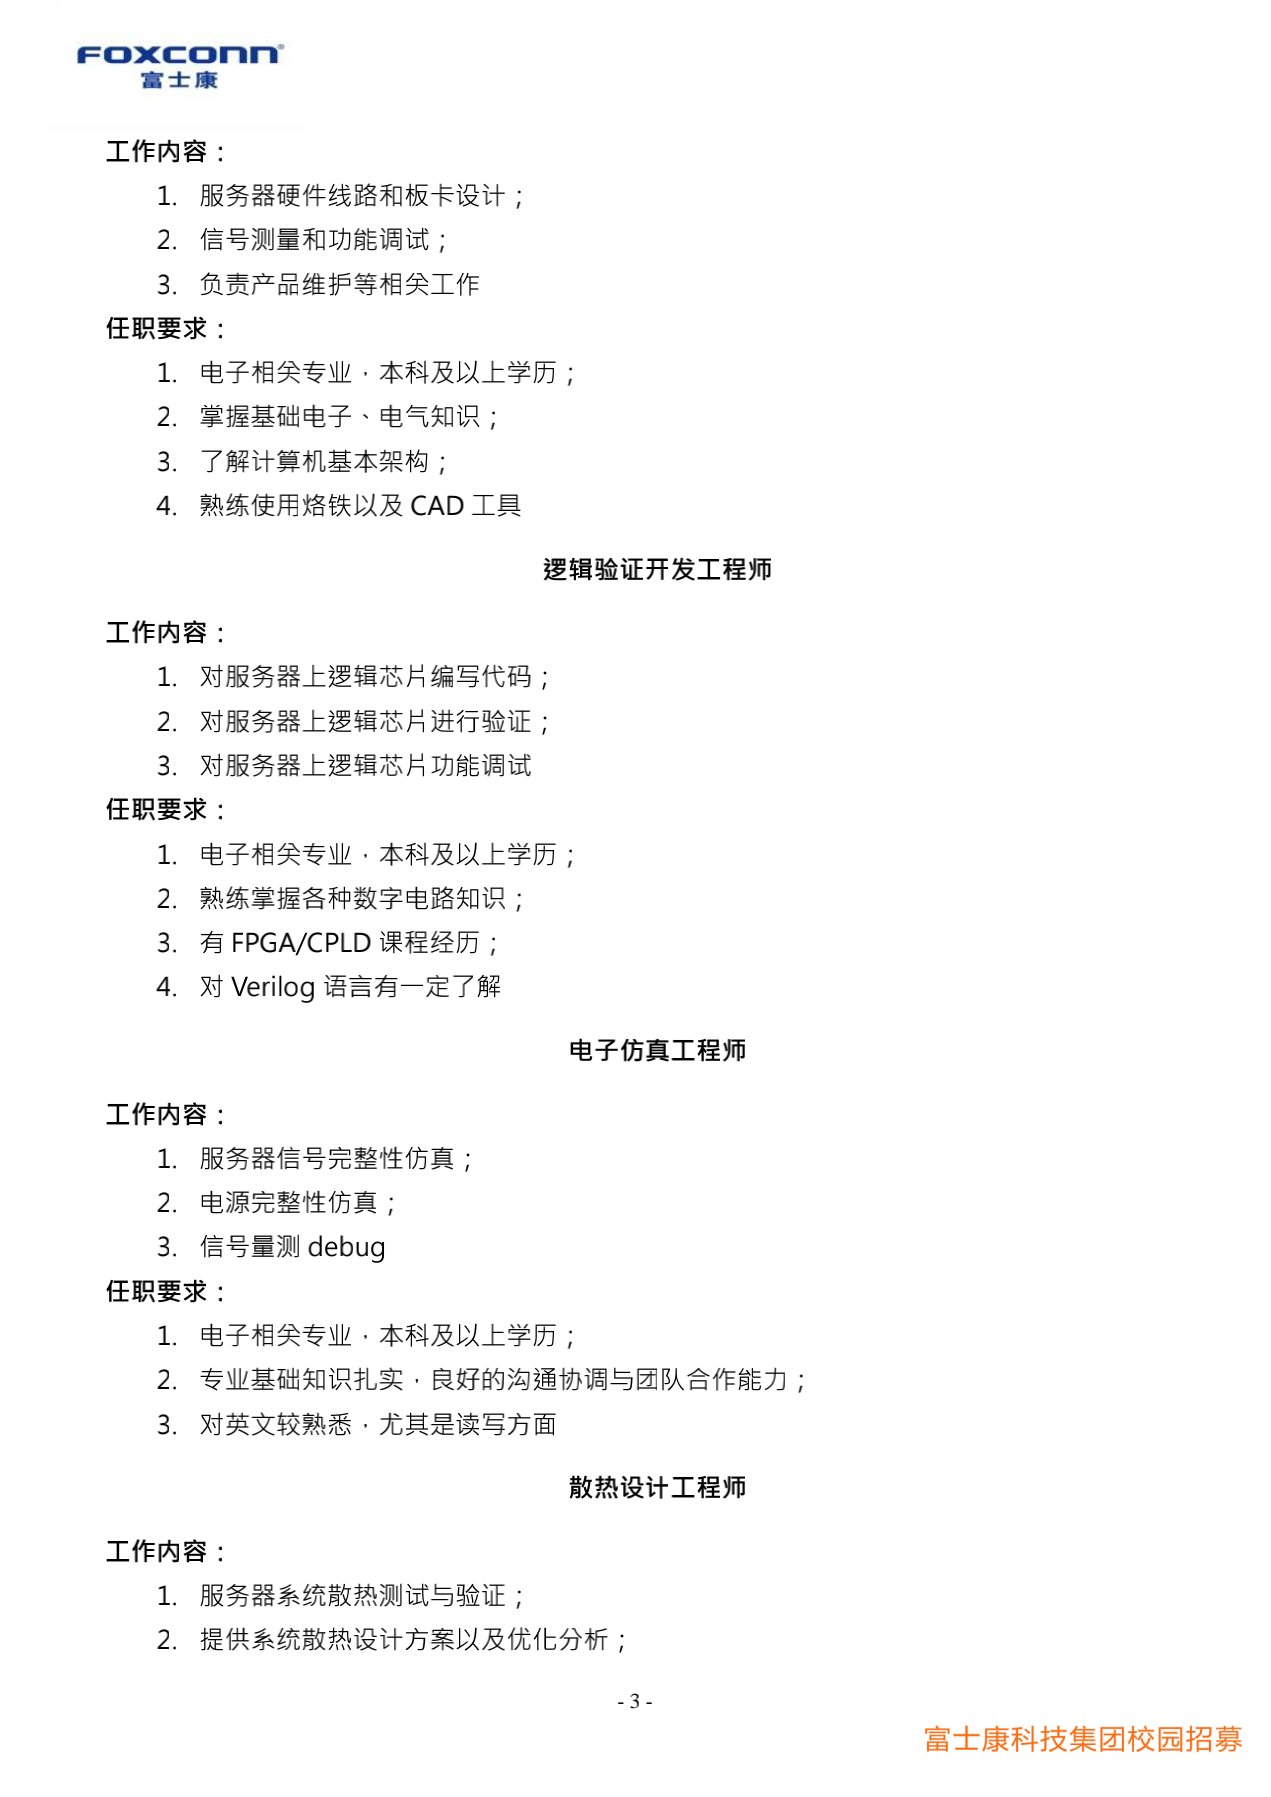 富士康科技集团天津科技园2022届校园招聘简章20210915(研发)_3.jpg